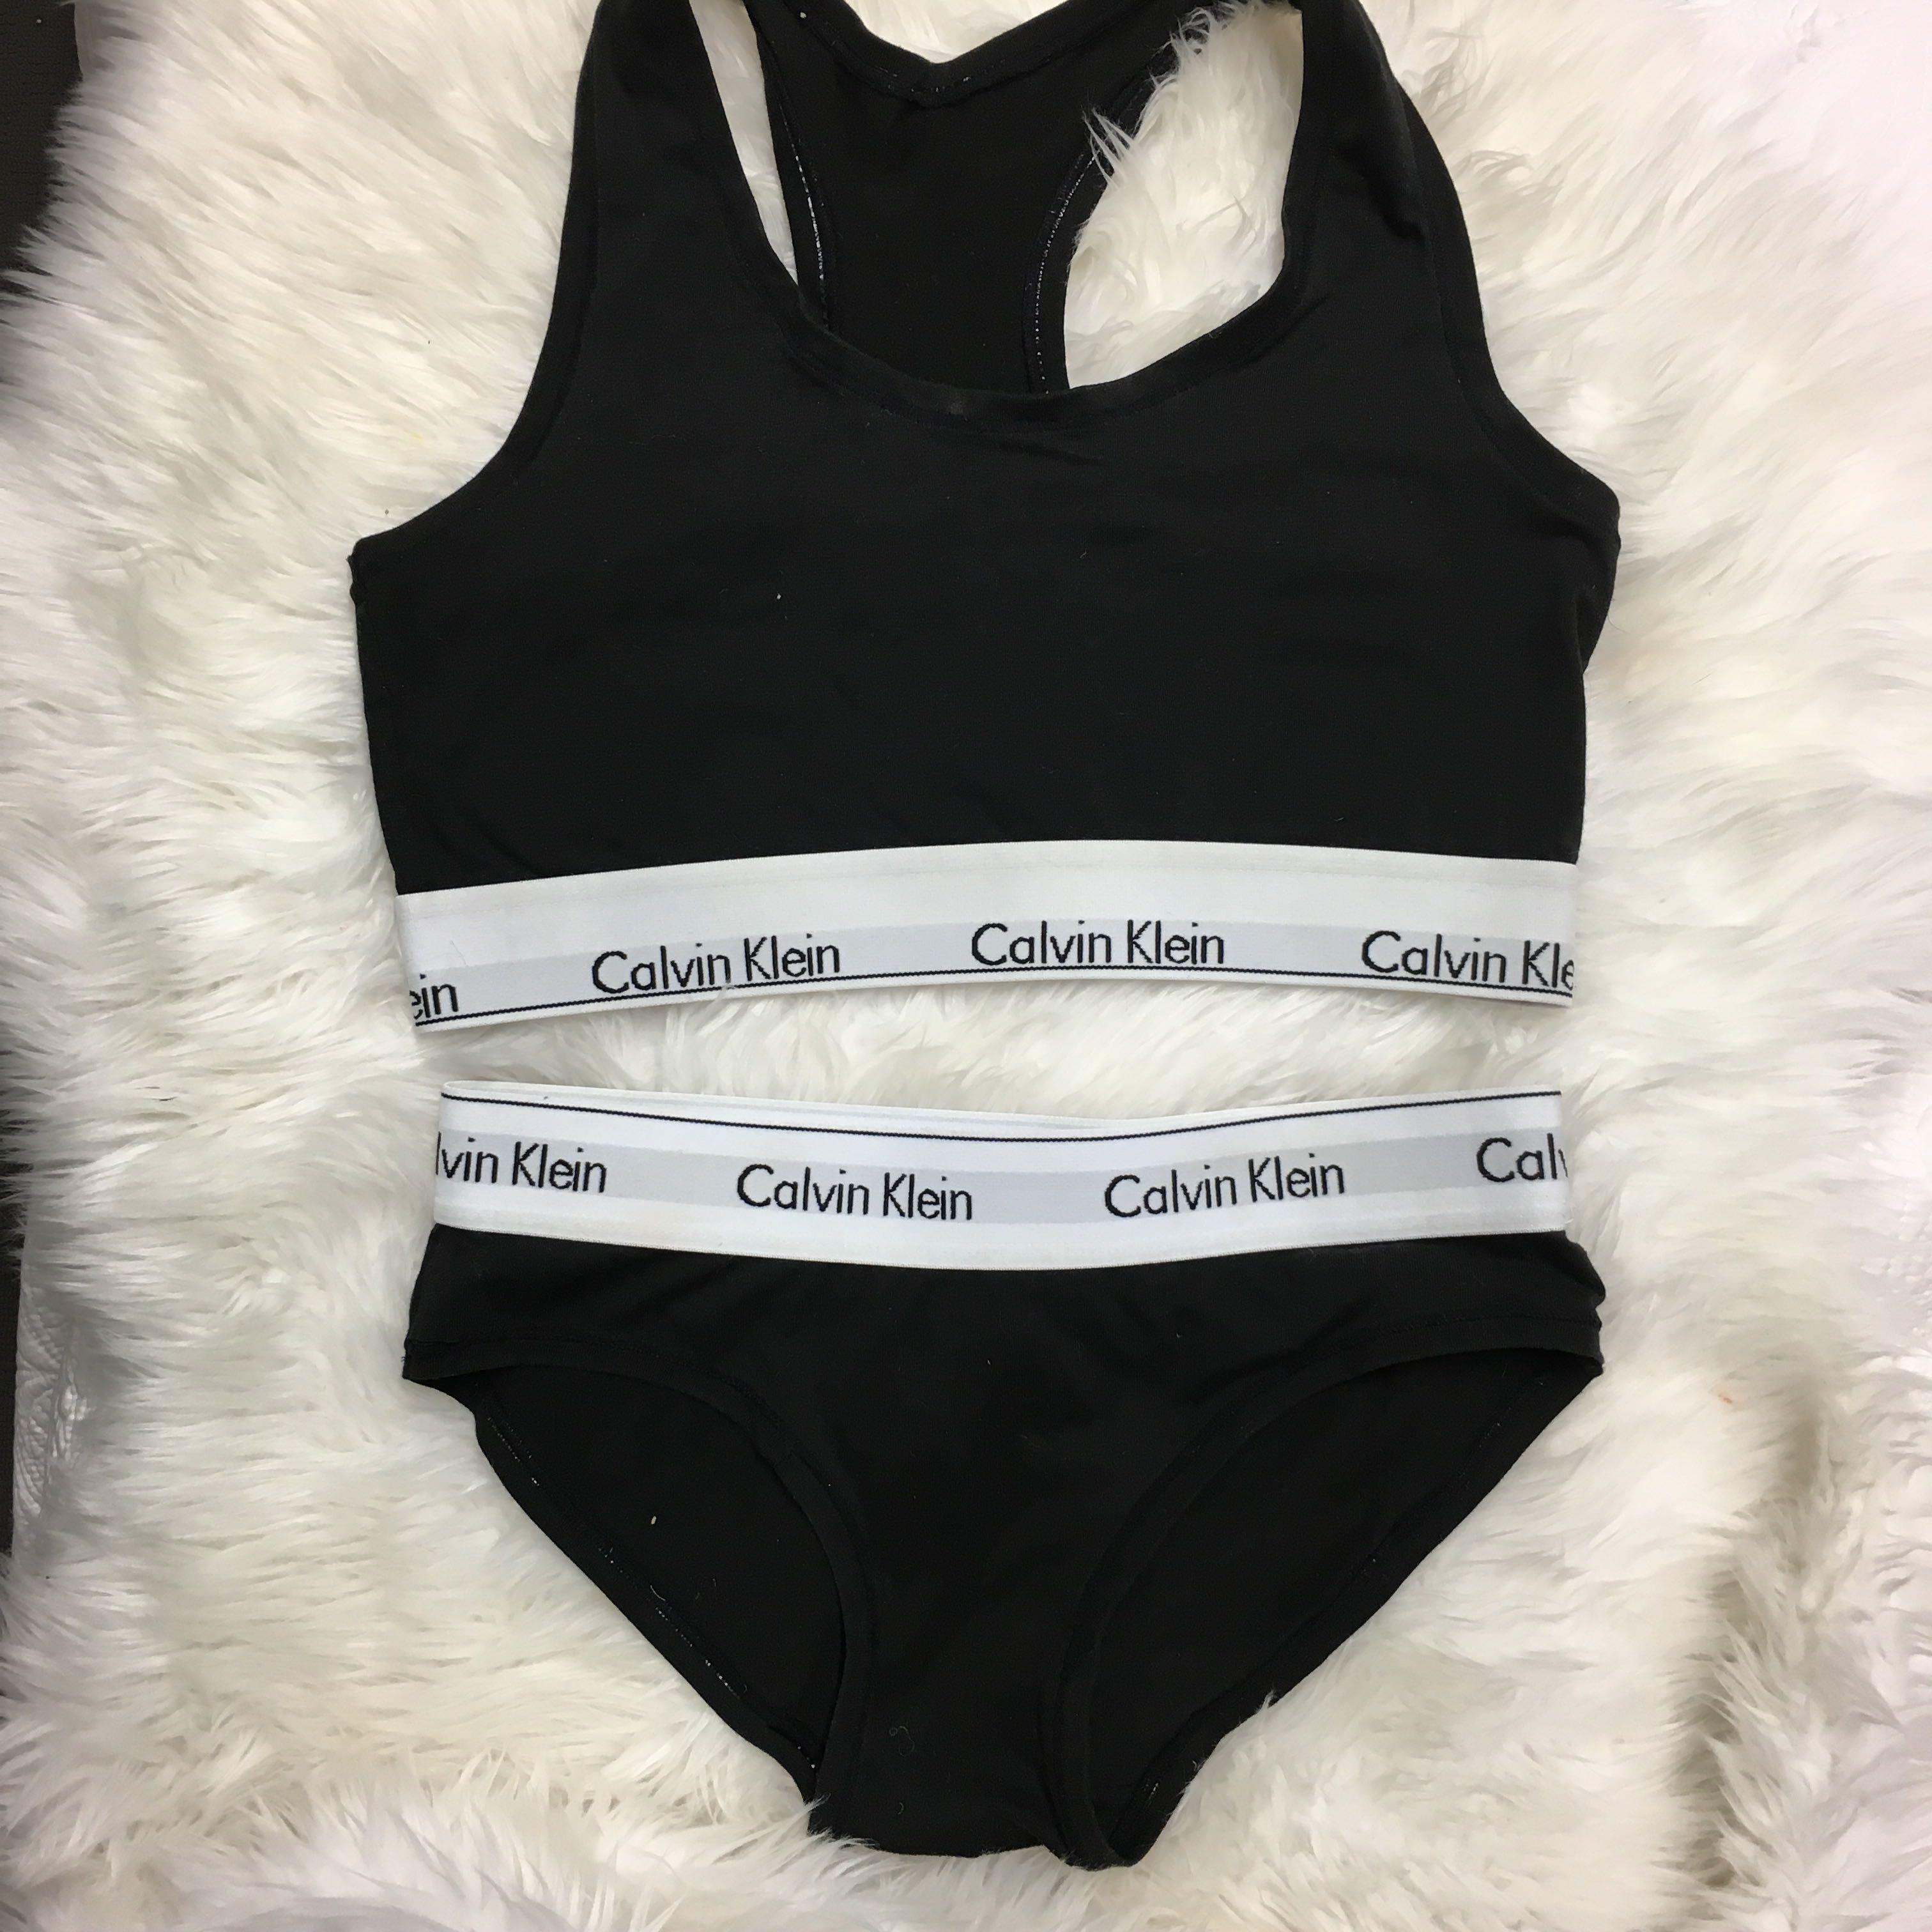 monogram calvin klein underwear